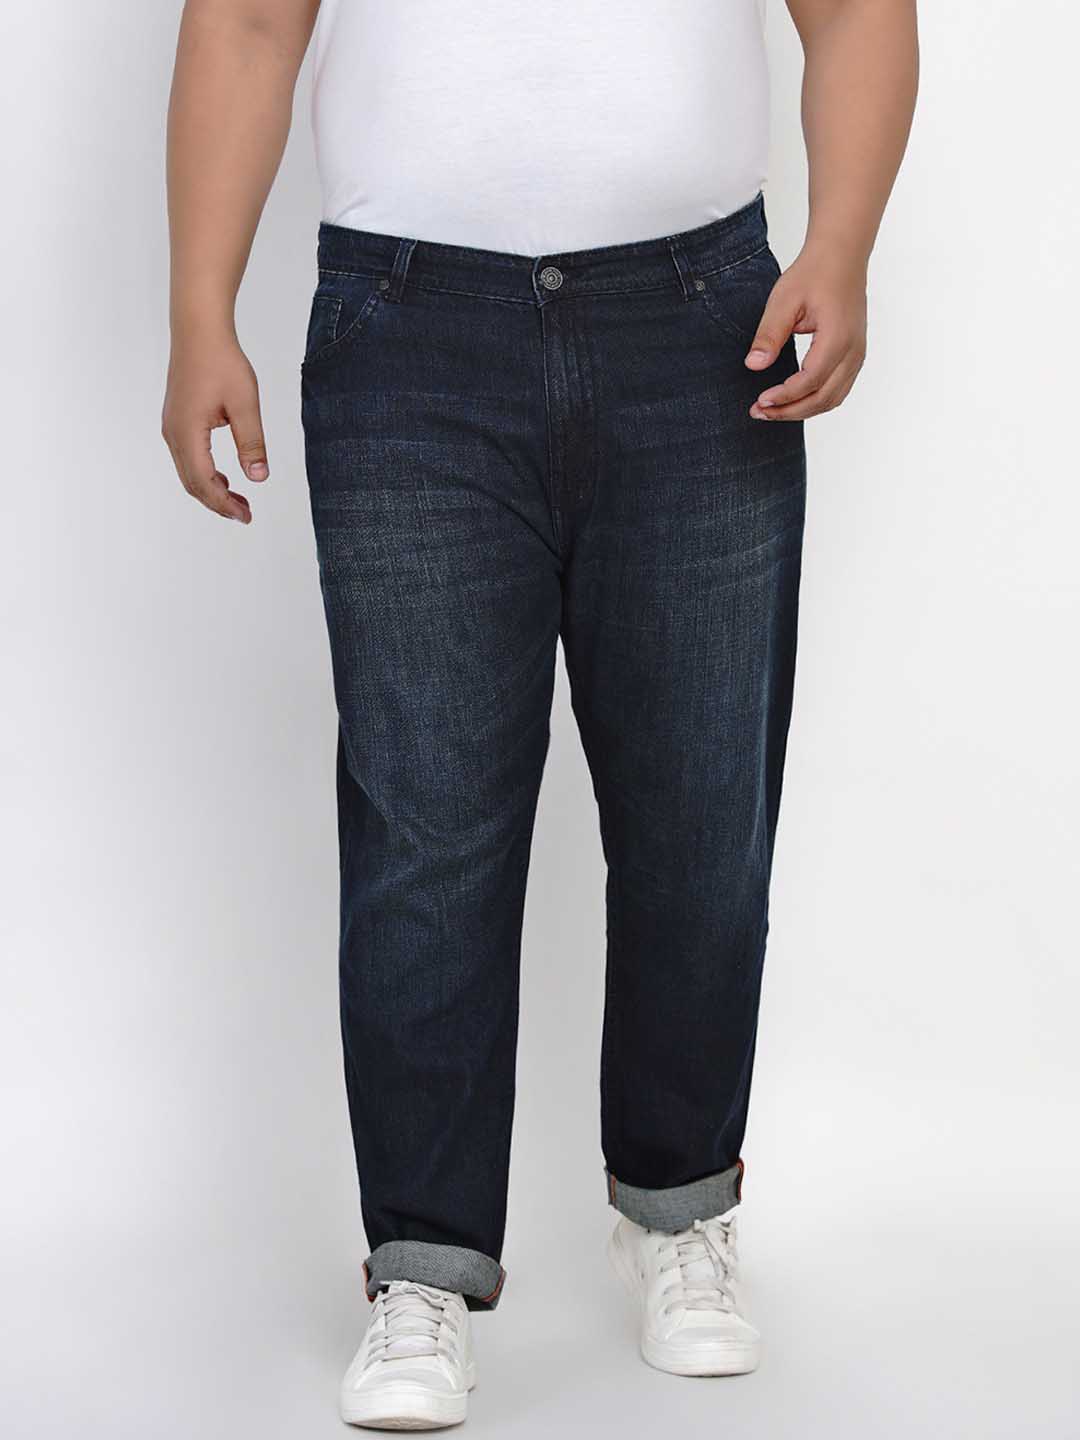 bottomwear/jeans/JPJ1281/jpj1281-3.jpg